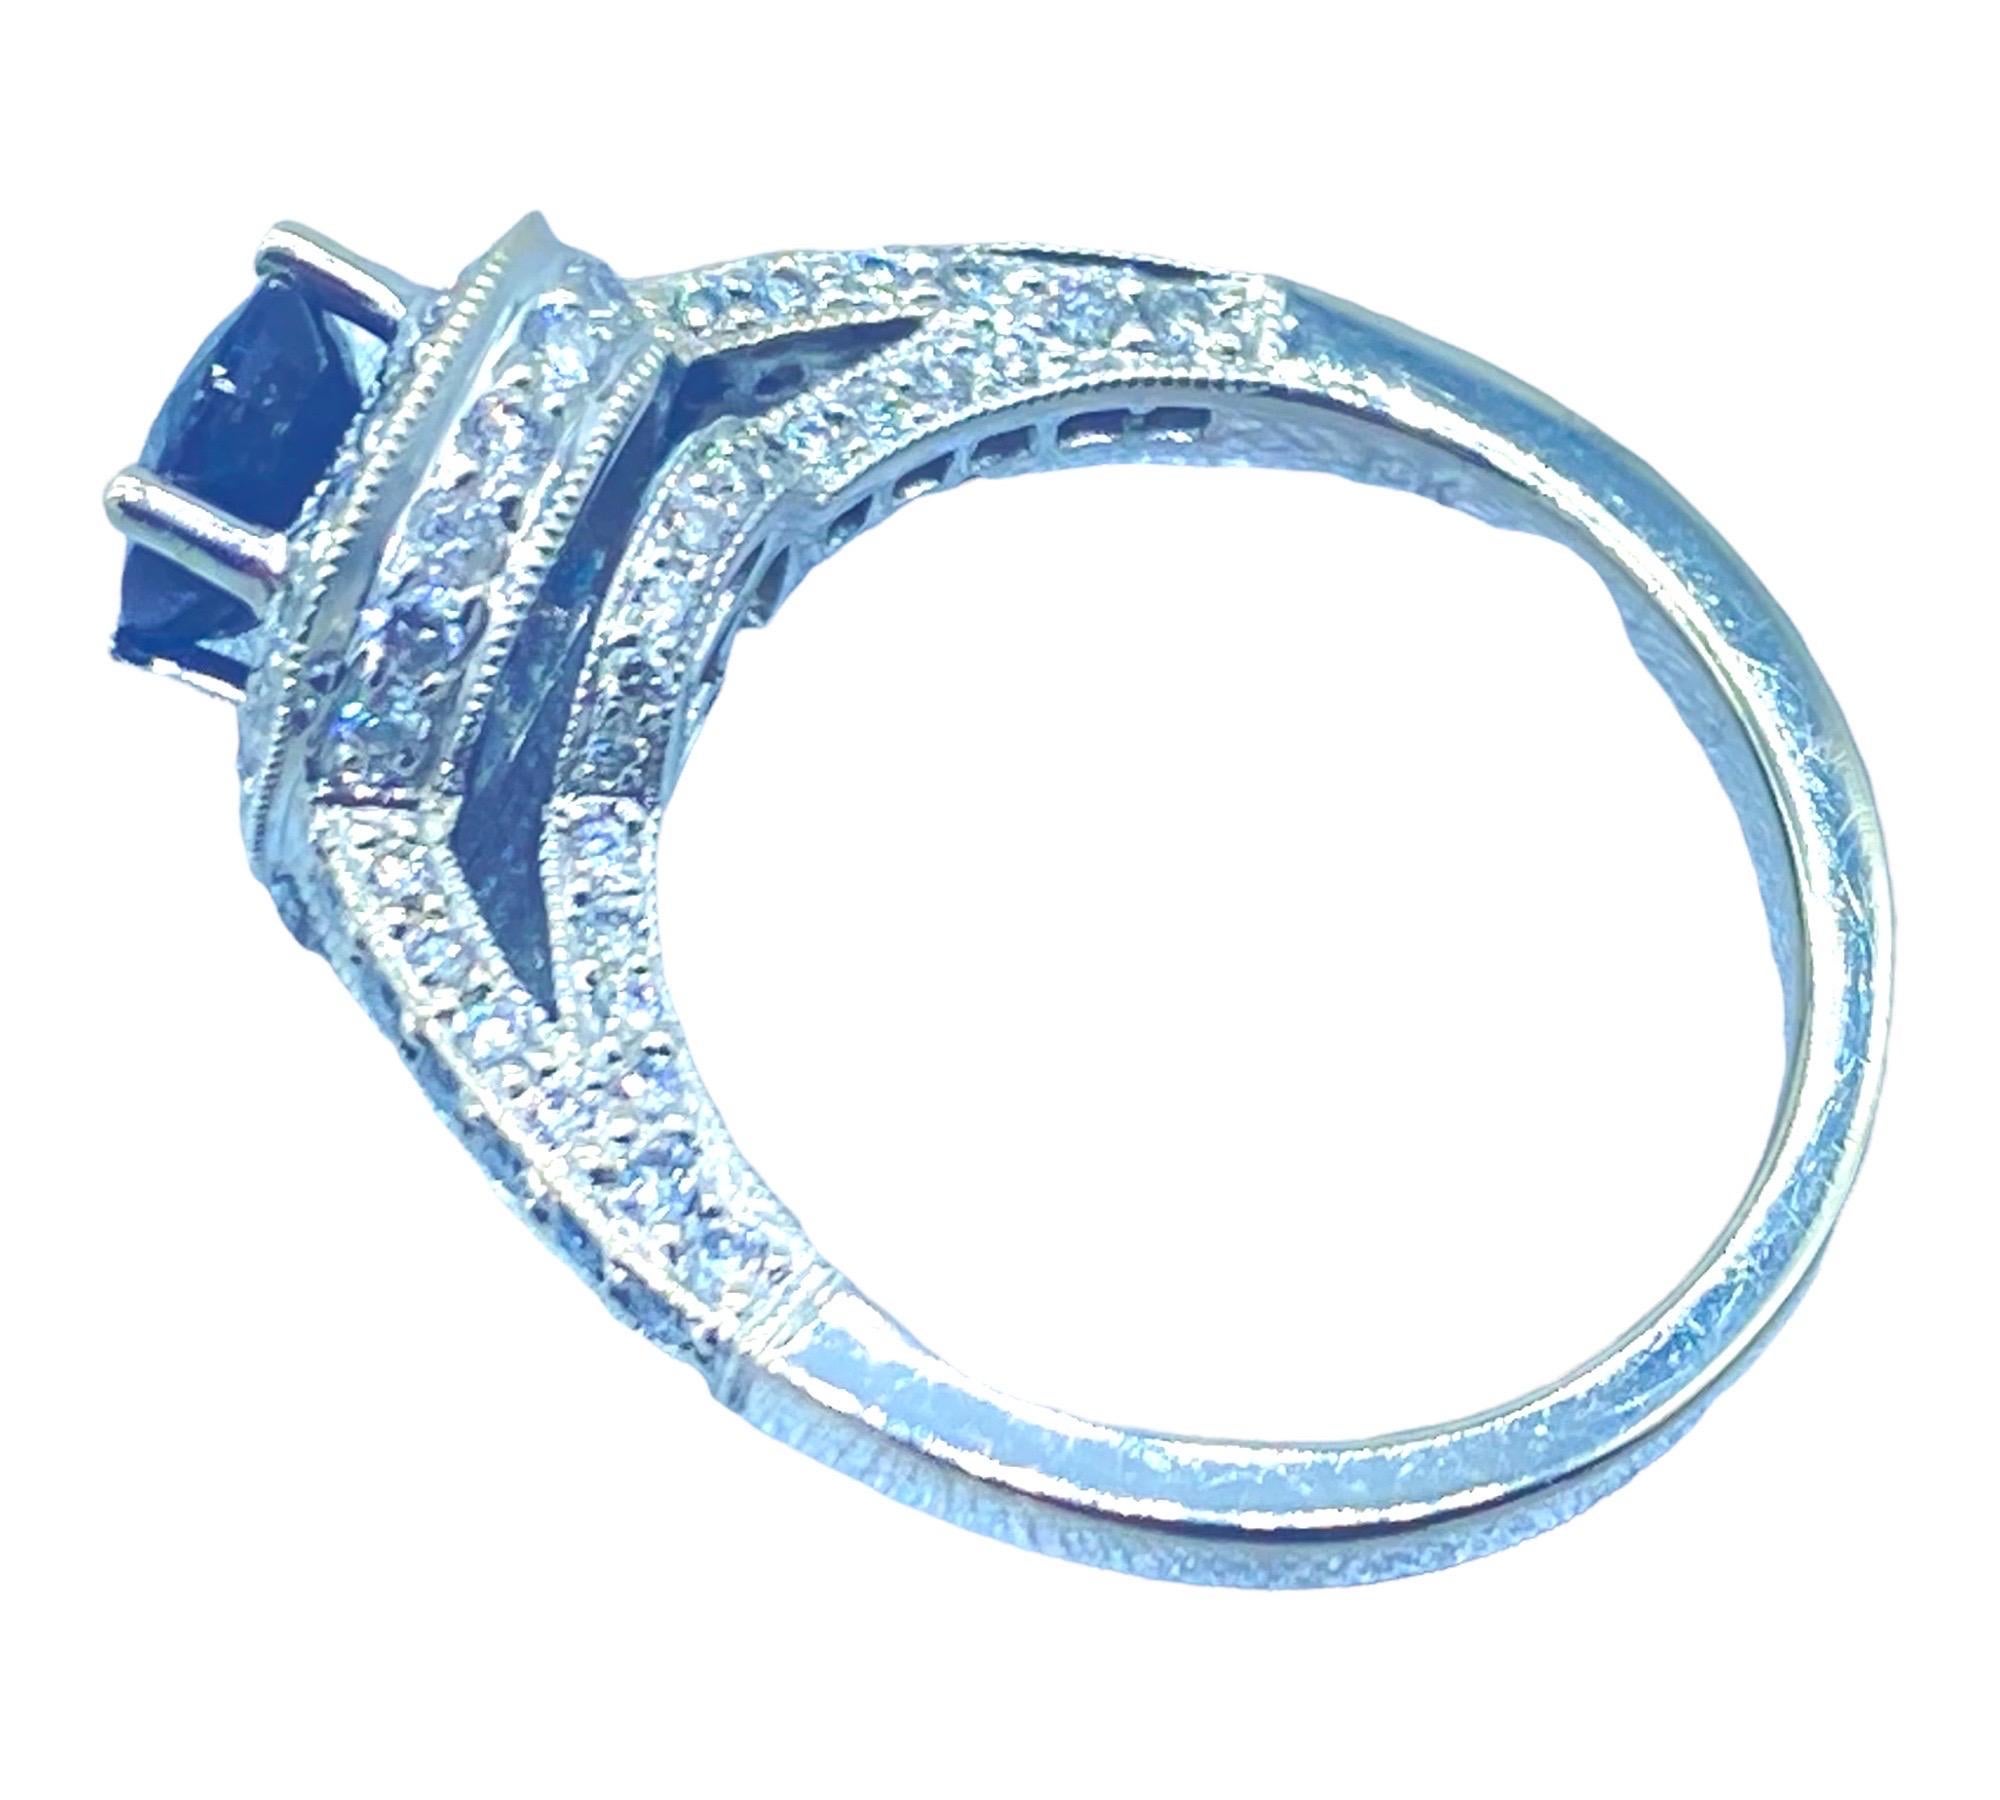 
Lady's 18 Karat Weißgold Diamant und Saphir Halo Ring sind 9,90 mm im Durchmesser an der Spitze, mit Schultern messen 2,85 mm. Die Höhe des Rings, mit einem Untergestell aus Diamanten, wird mit 9 mm berechnet.  Die Ringgröße ist 6.5

Im Folgenden